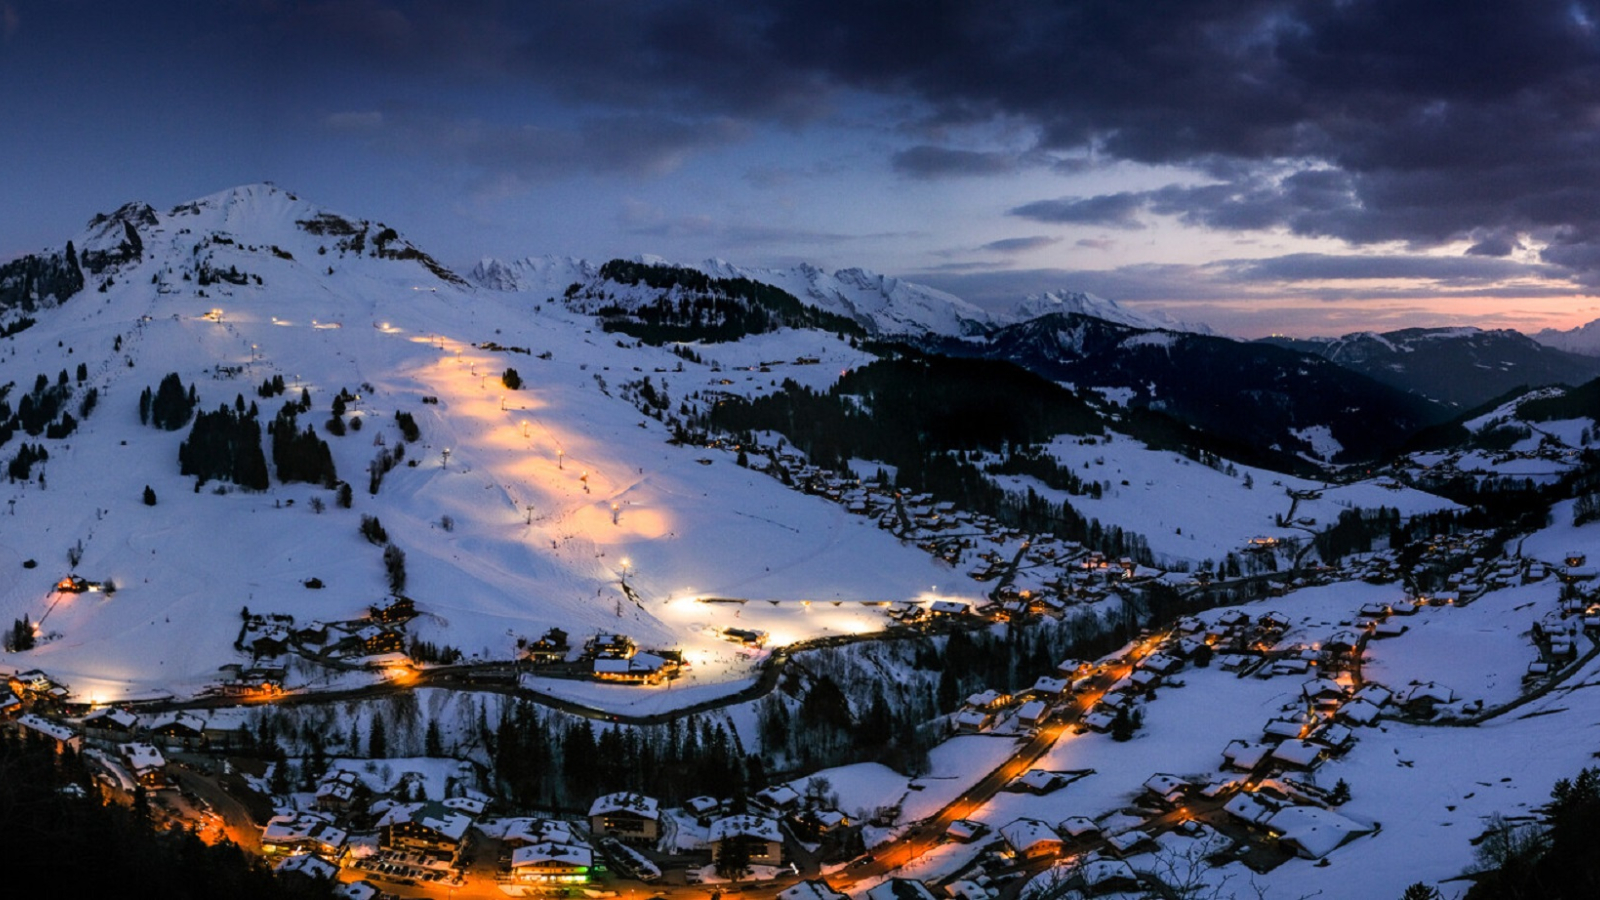 Le domaine de ski alpin du Grand-Bornand ouvert en nocturne